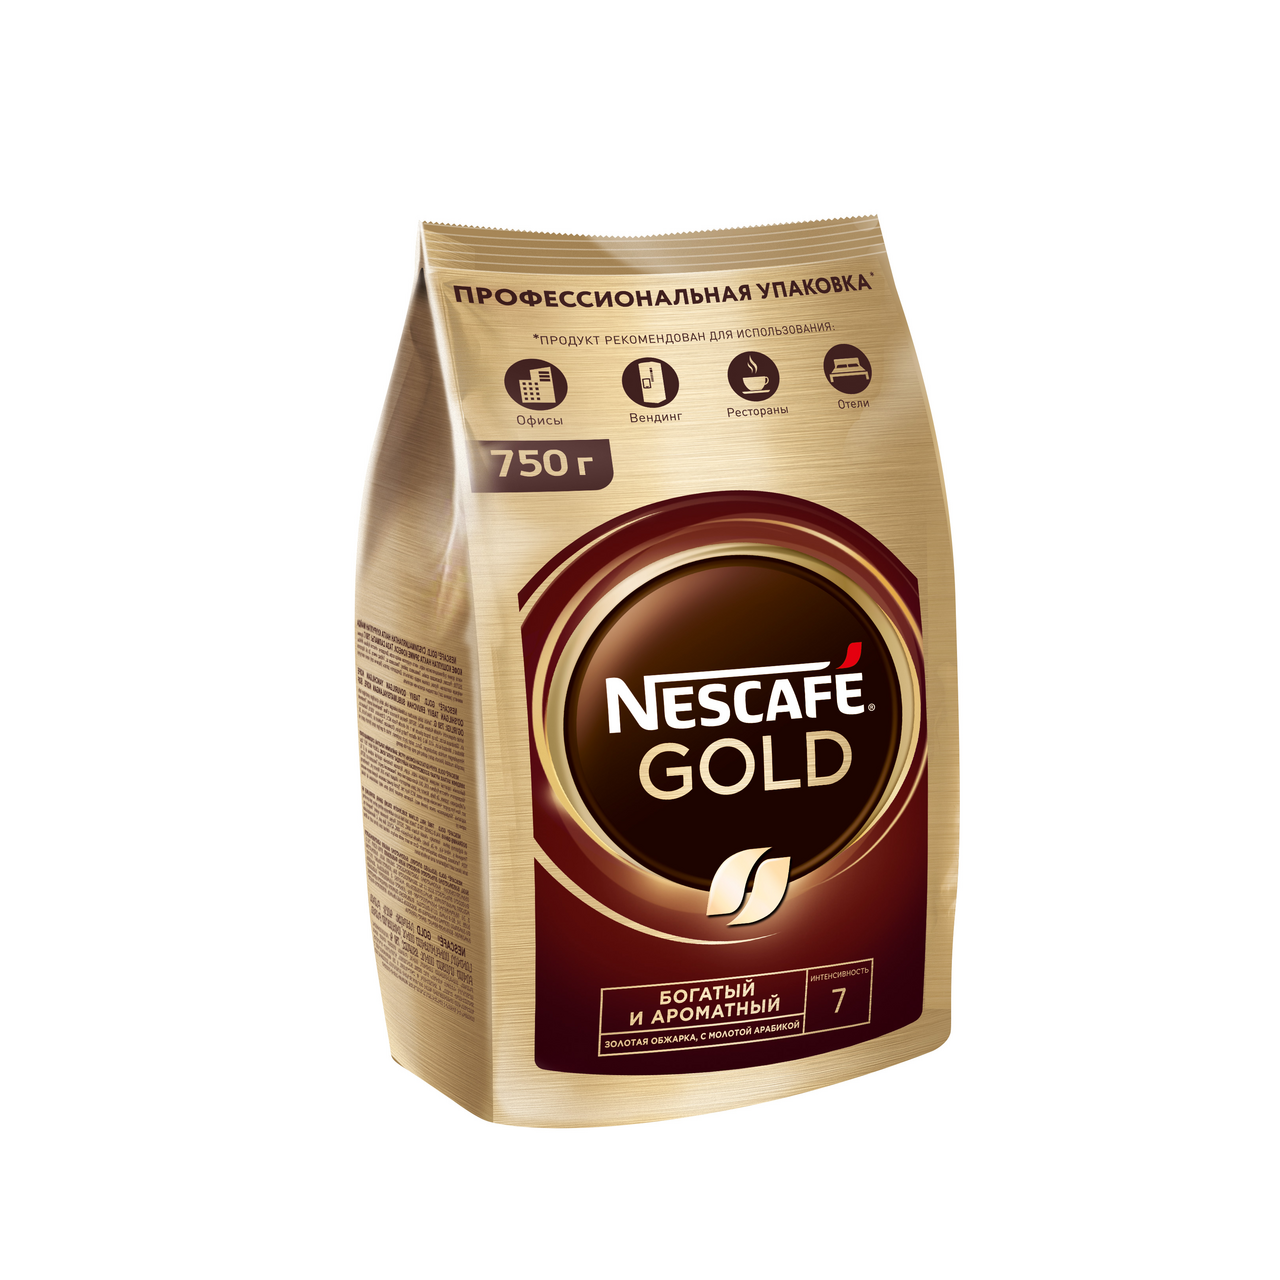 Nescafe gold растворимый 900. Nescafe Gold 750г. Кофе Нескафе Голд в мягкой упаковке. Кофе Nescafe Gold 300 г. Нескафе Голд 180 г в мягкой упаковке.